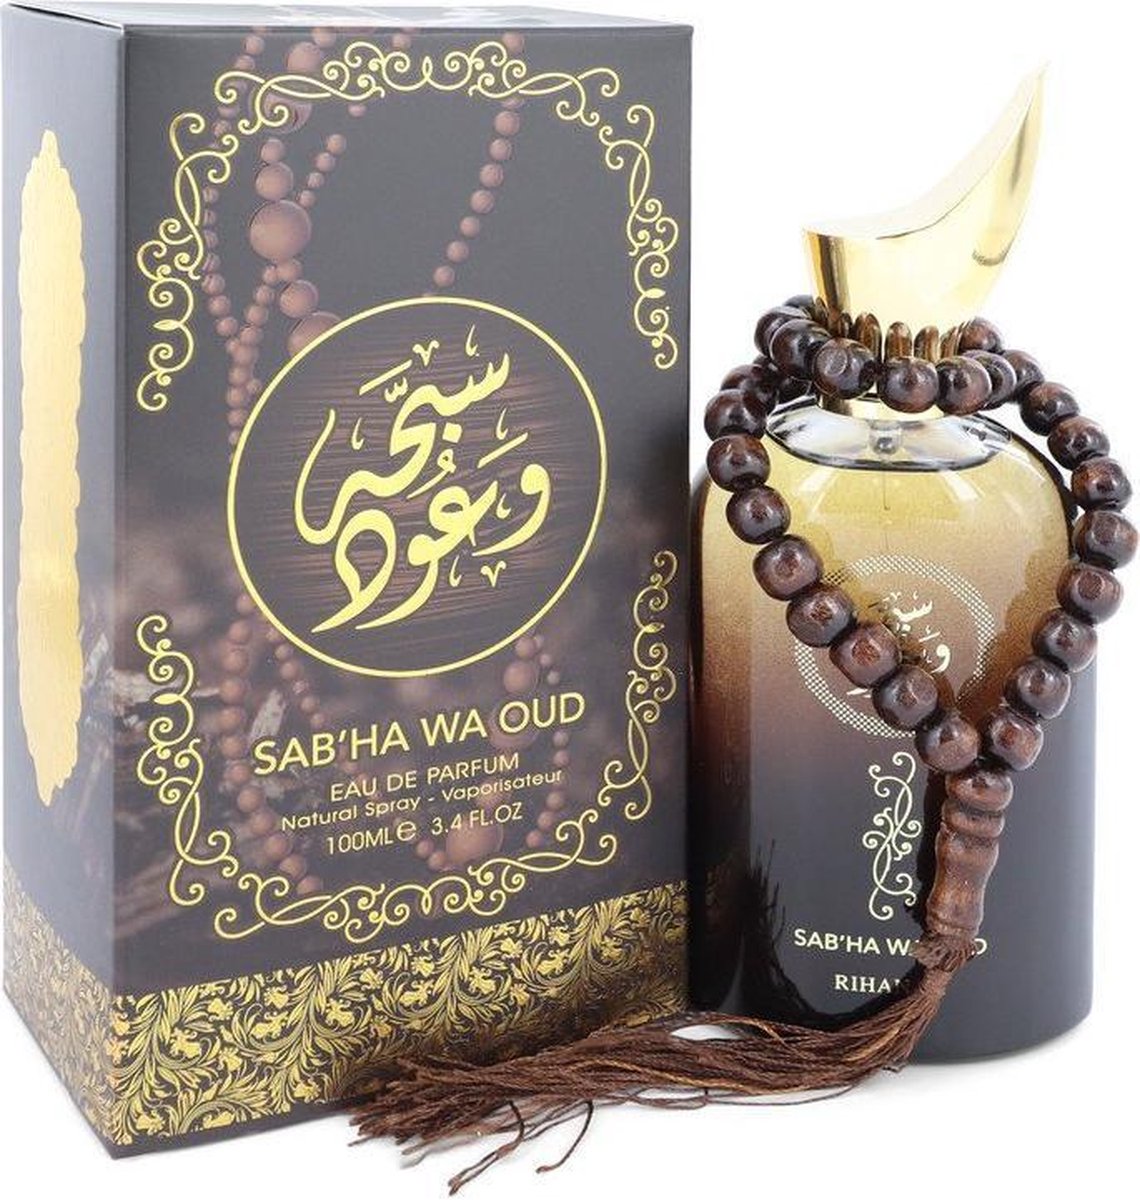 Sabha Wa Oud by Rihanah 100 ml - Eau De Parfum Spray (Unisex)